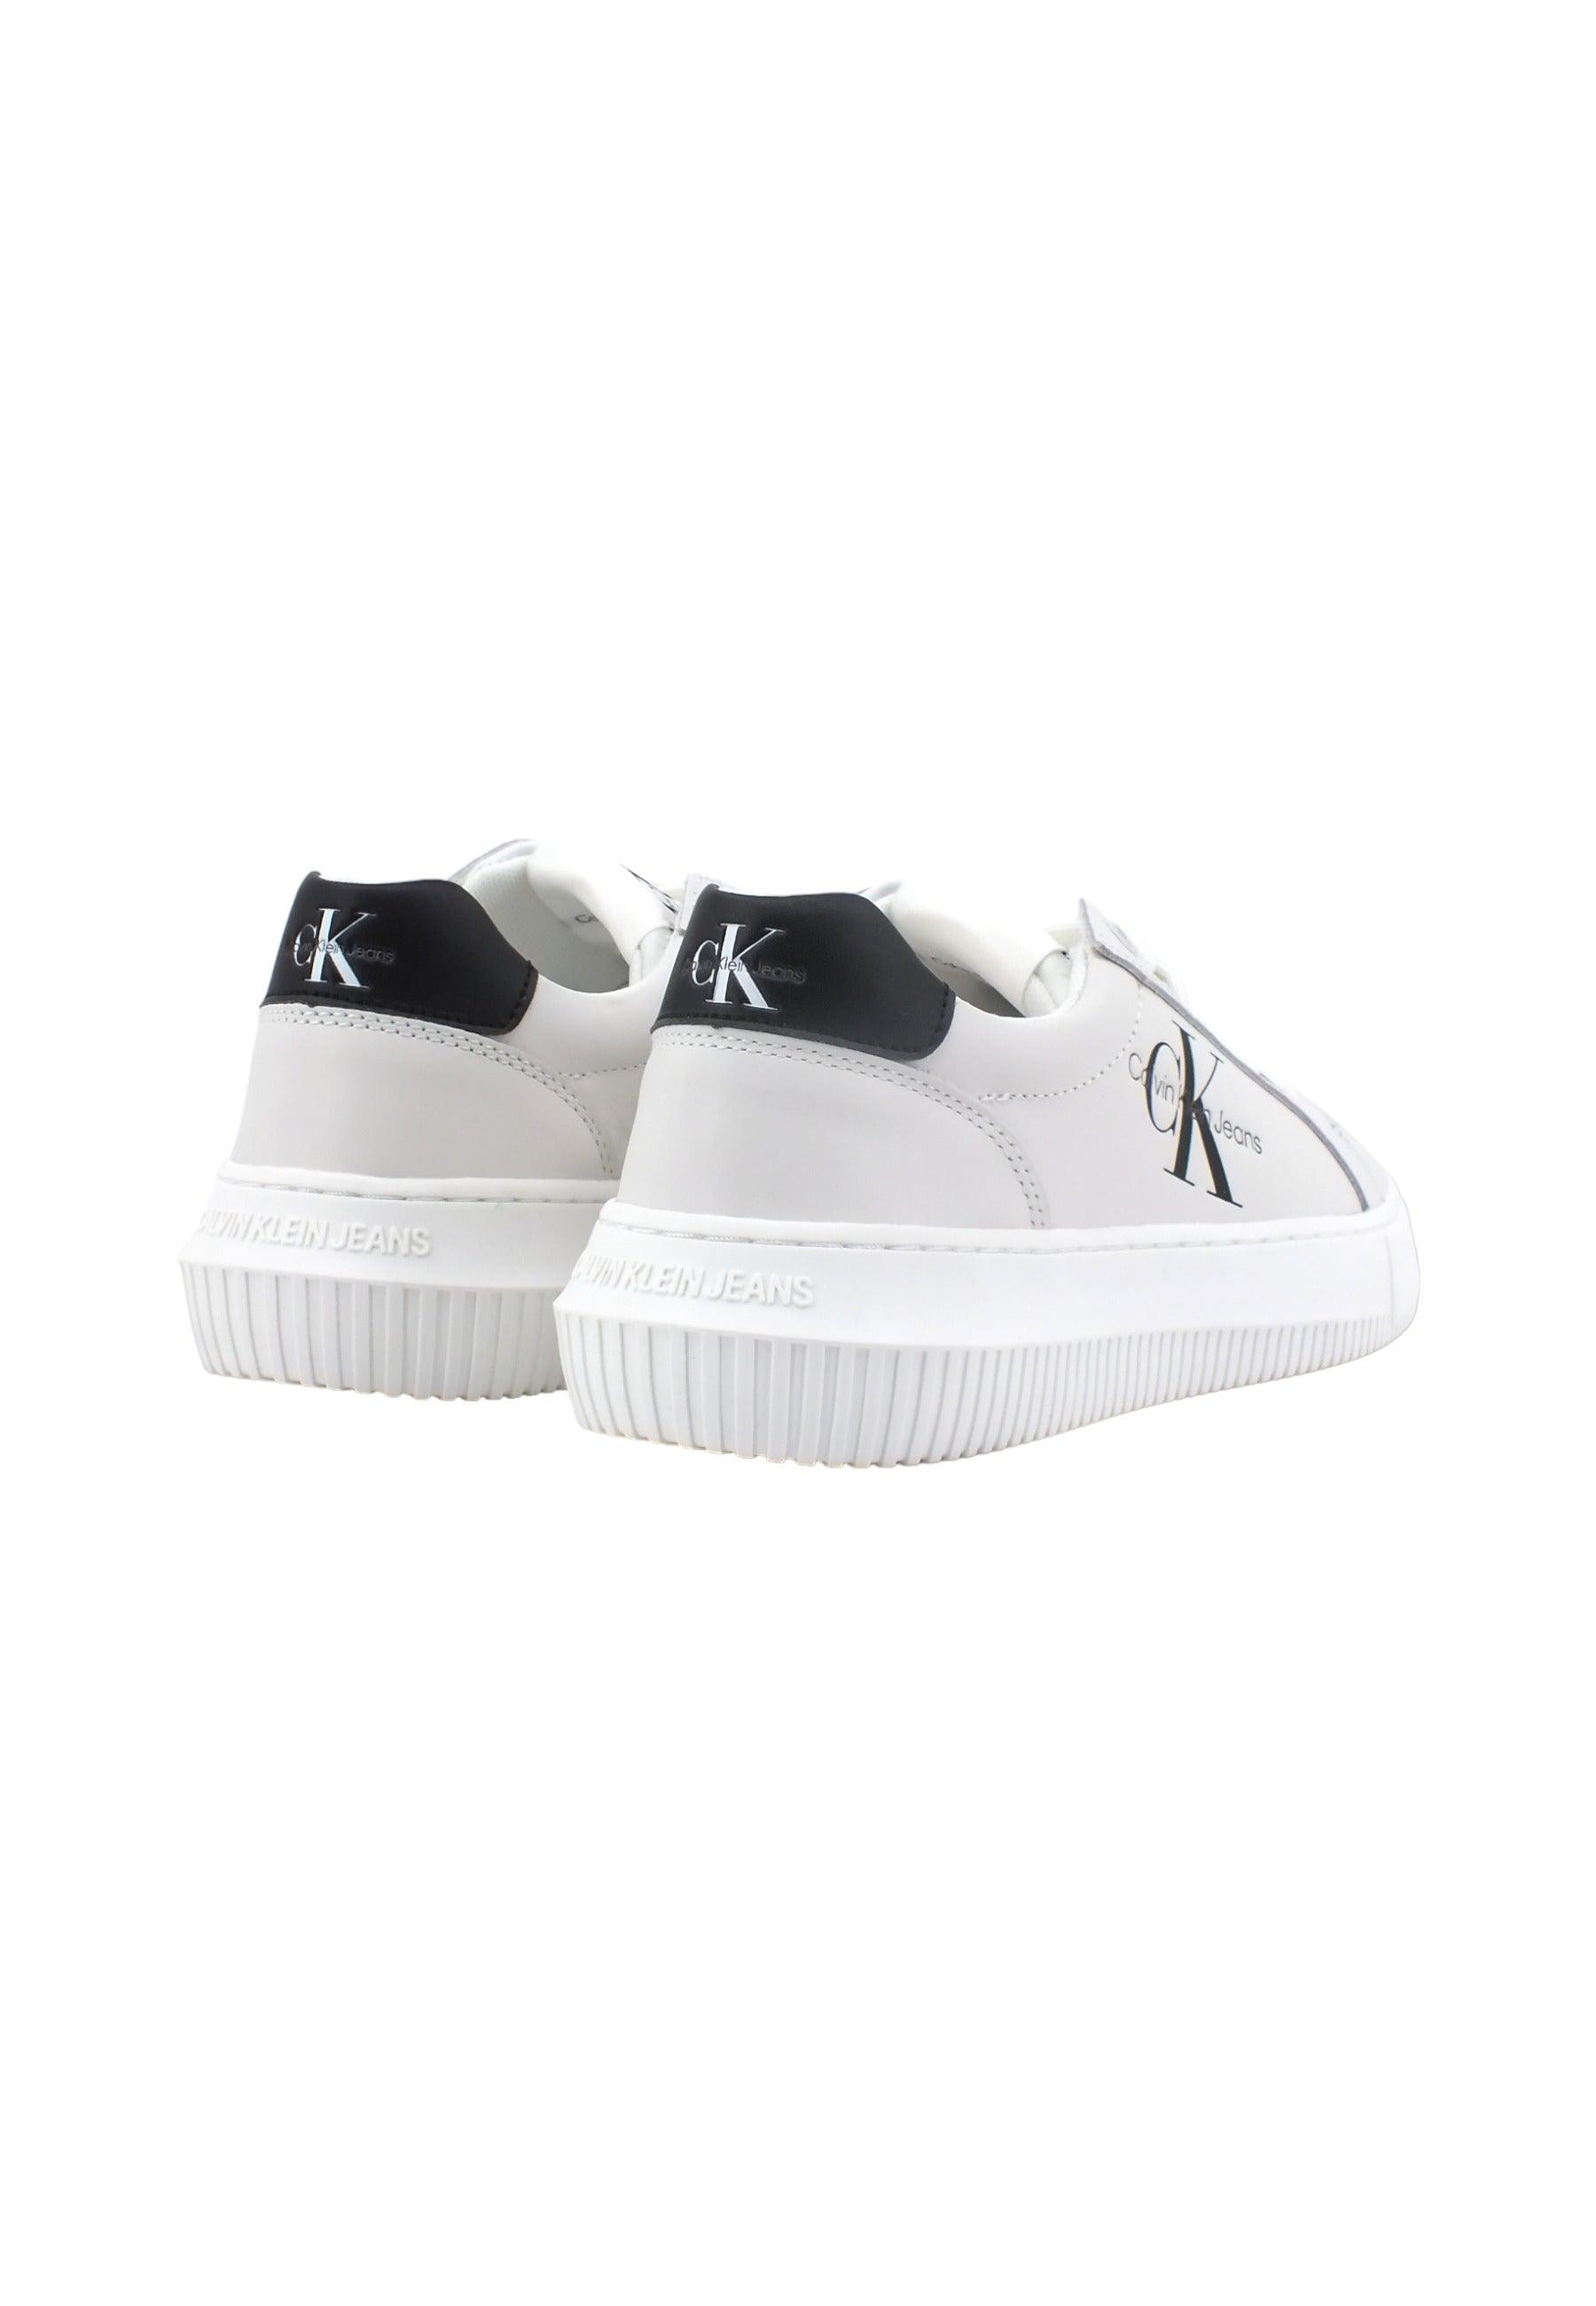 CALVIN KLEIN Chunky Cupsole Sneaker Donna Bright White Black YW0YW00823 - Sandrini Calzature e Abbigliamento